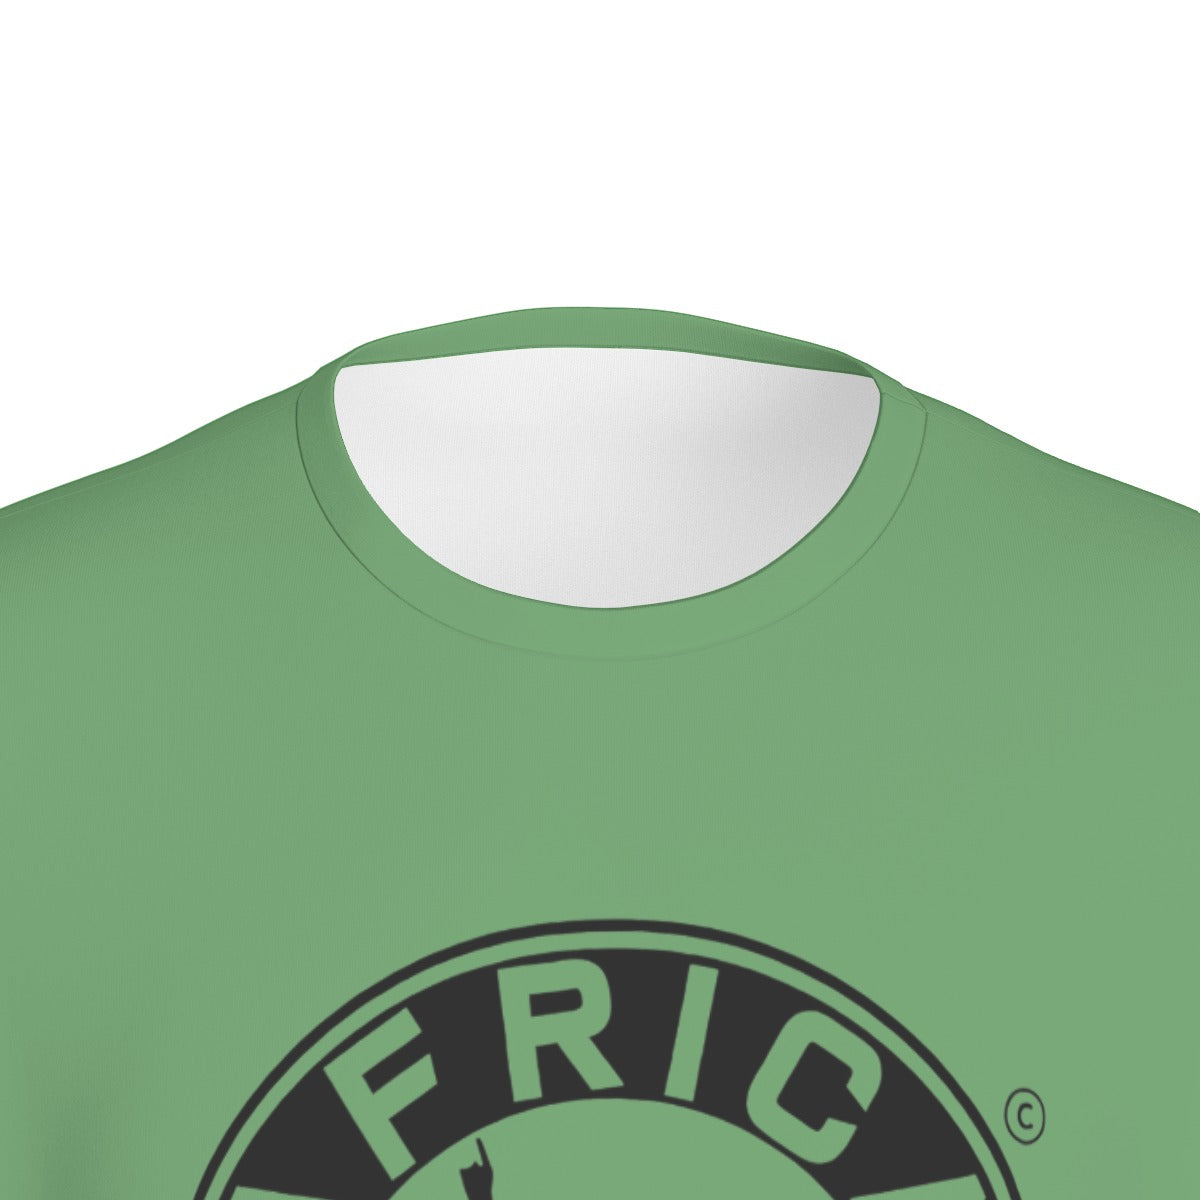 Africa Top Team Green T-Shirt